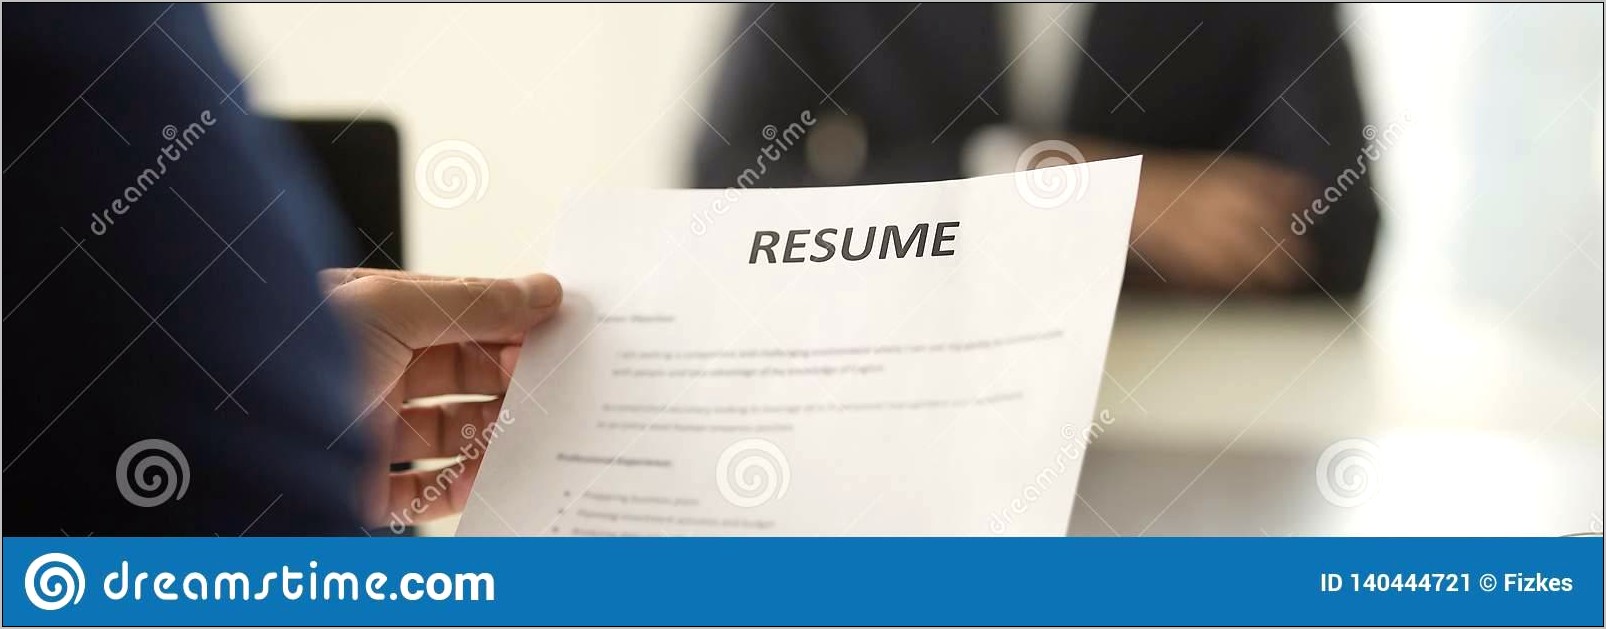 Closing Manager Job Description For Resume